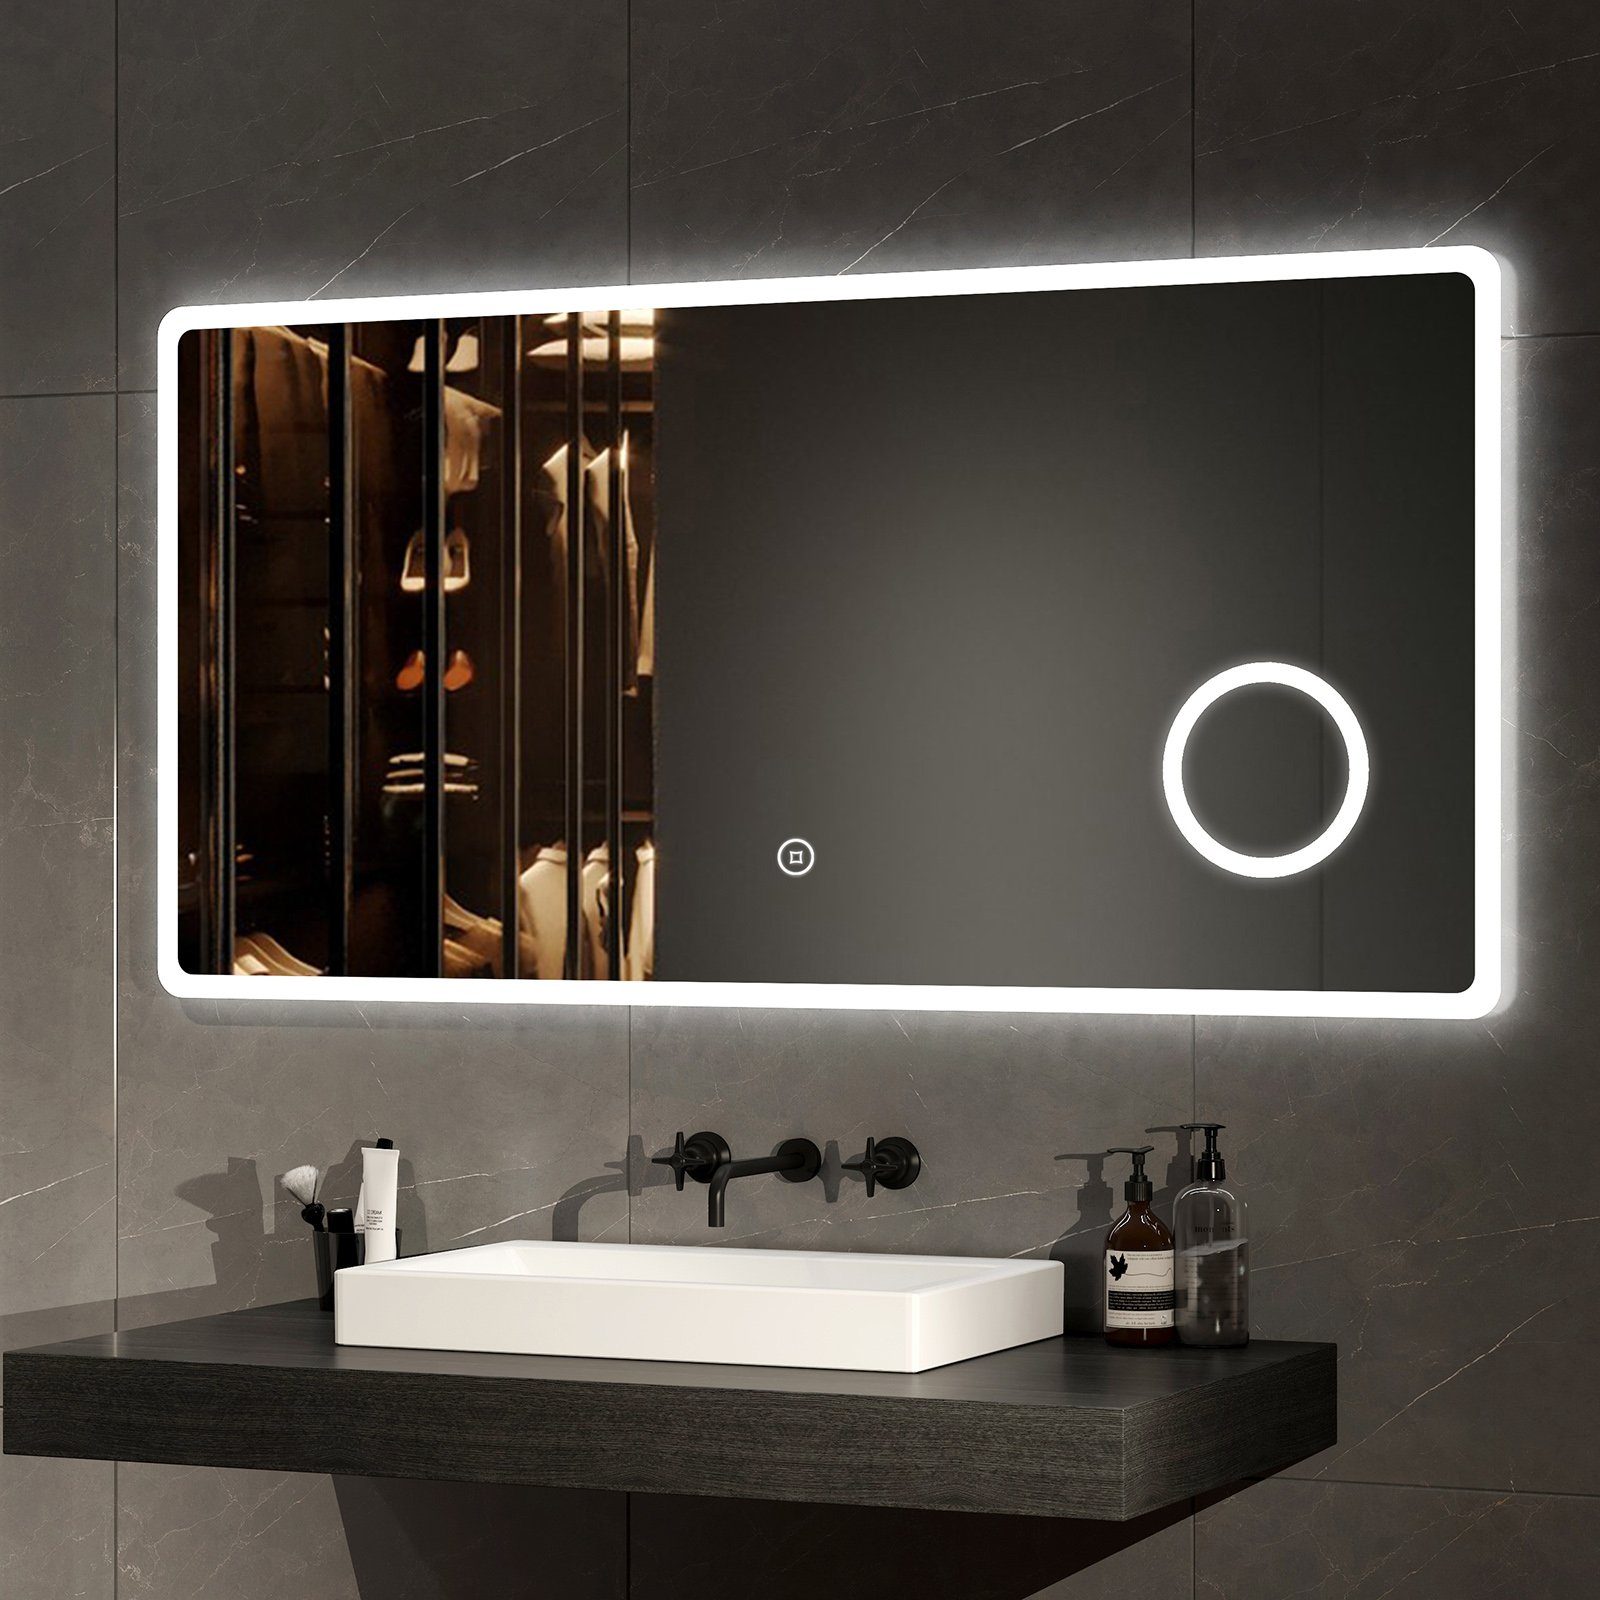 EMKE Badspiegel Badspiegel mit Beleuchtung LED Wandspiegel Badezimmerspiegel, mit 3-fach Vergrößerung, Kaltweißes Licht (Modell M)